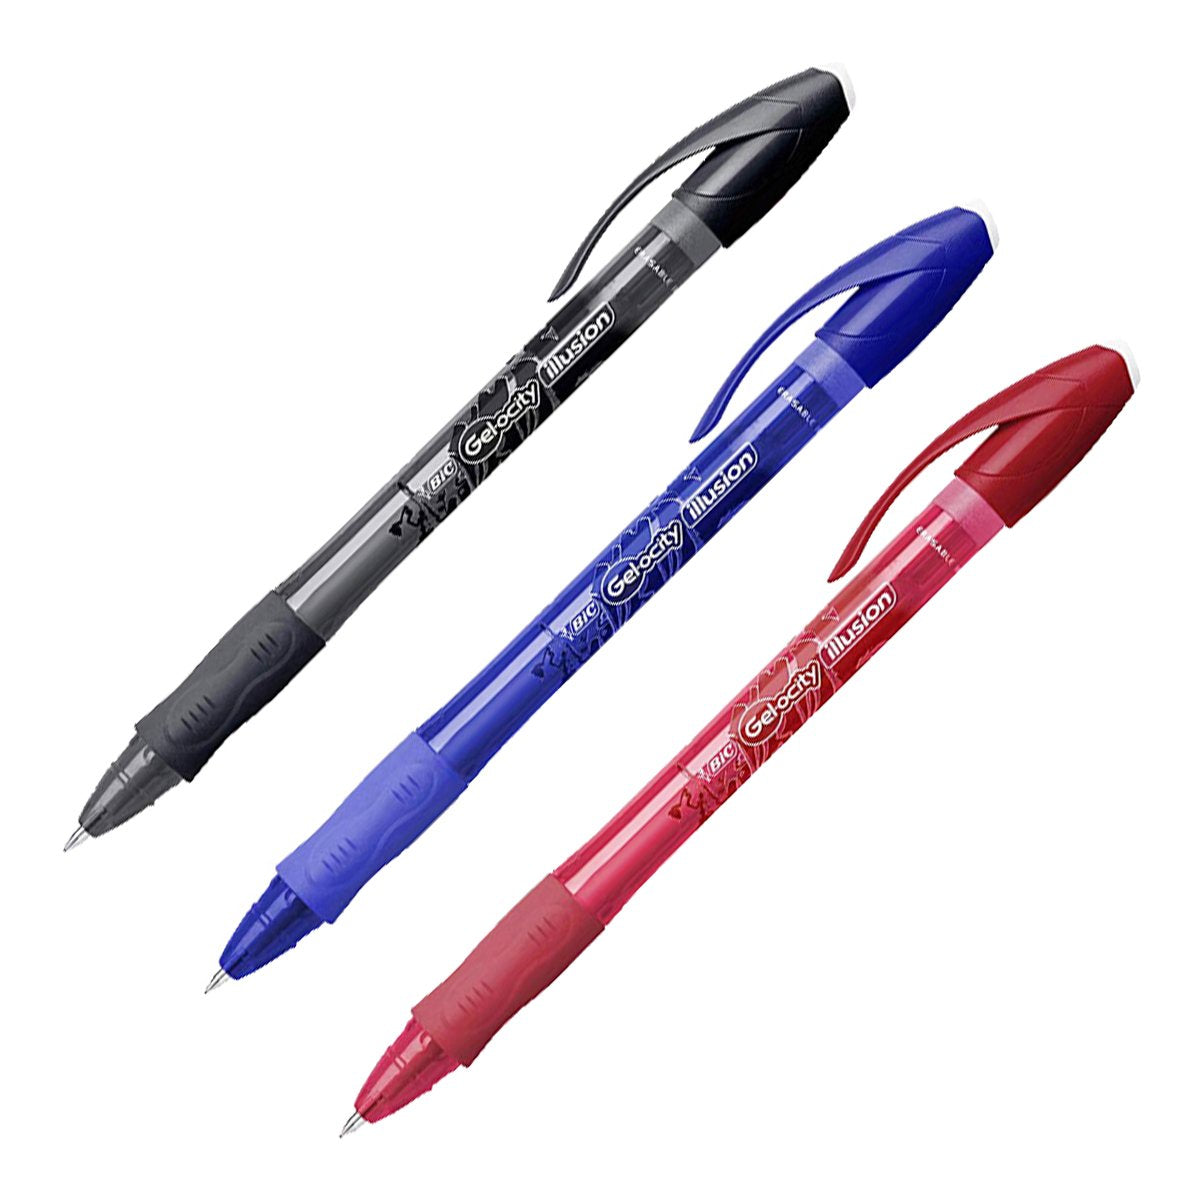 BIC Gel-ocity Illusion - Bolígrafo Borrable y Recargable de 0.7mm con Grip. Tinta del Gel. Azul